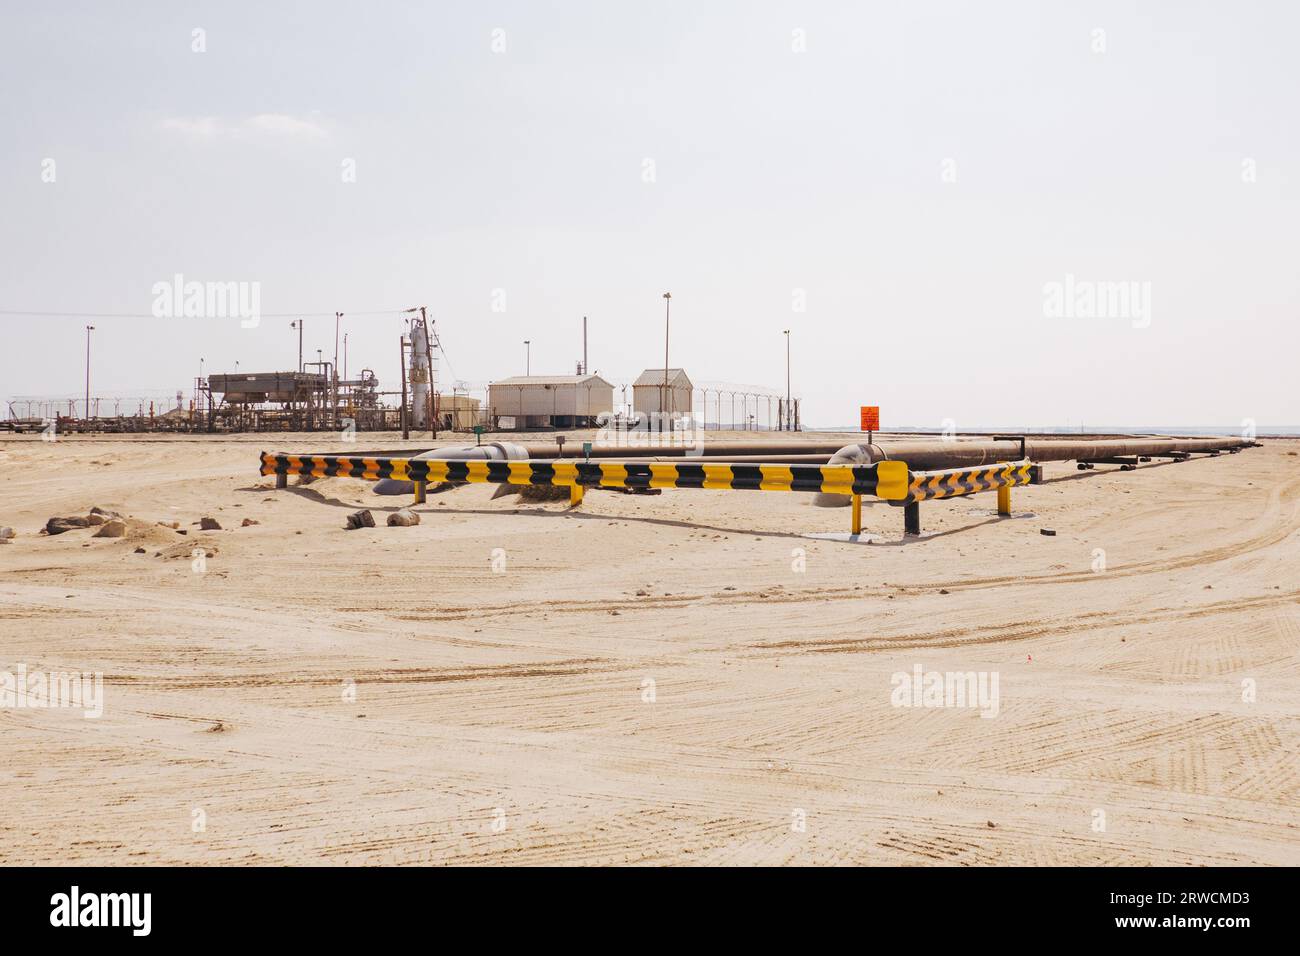 Infrastruktur für die Gewinnung, Raffination, Speicherung und den Transport von Erdgas in der Wüste im Nahen Osten von Bahrain Stockfoto